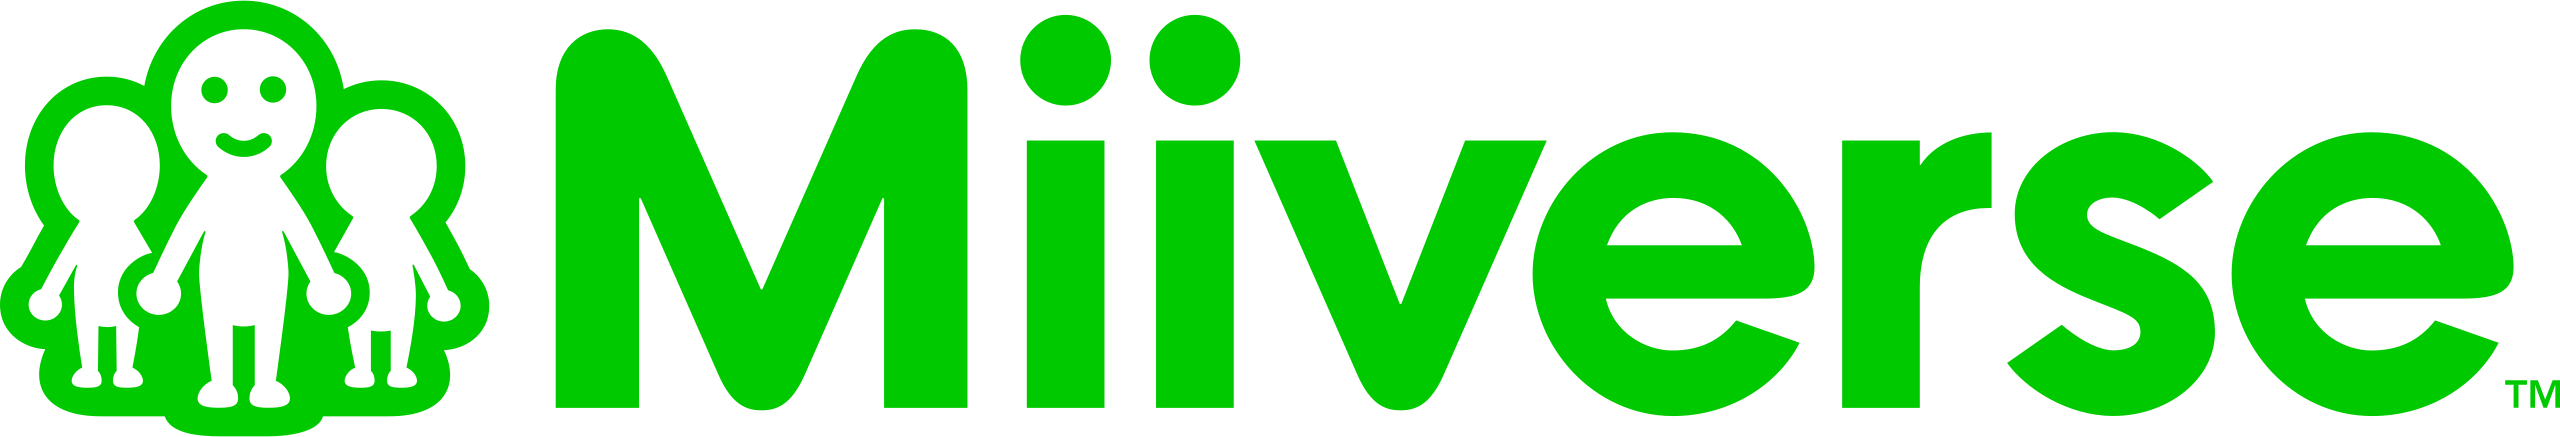 File:Miiverse Logo.png